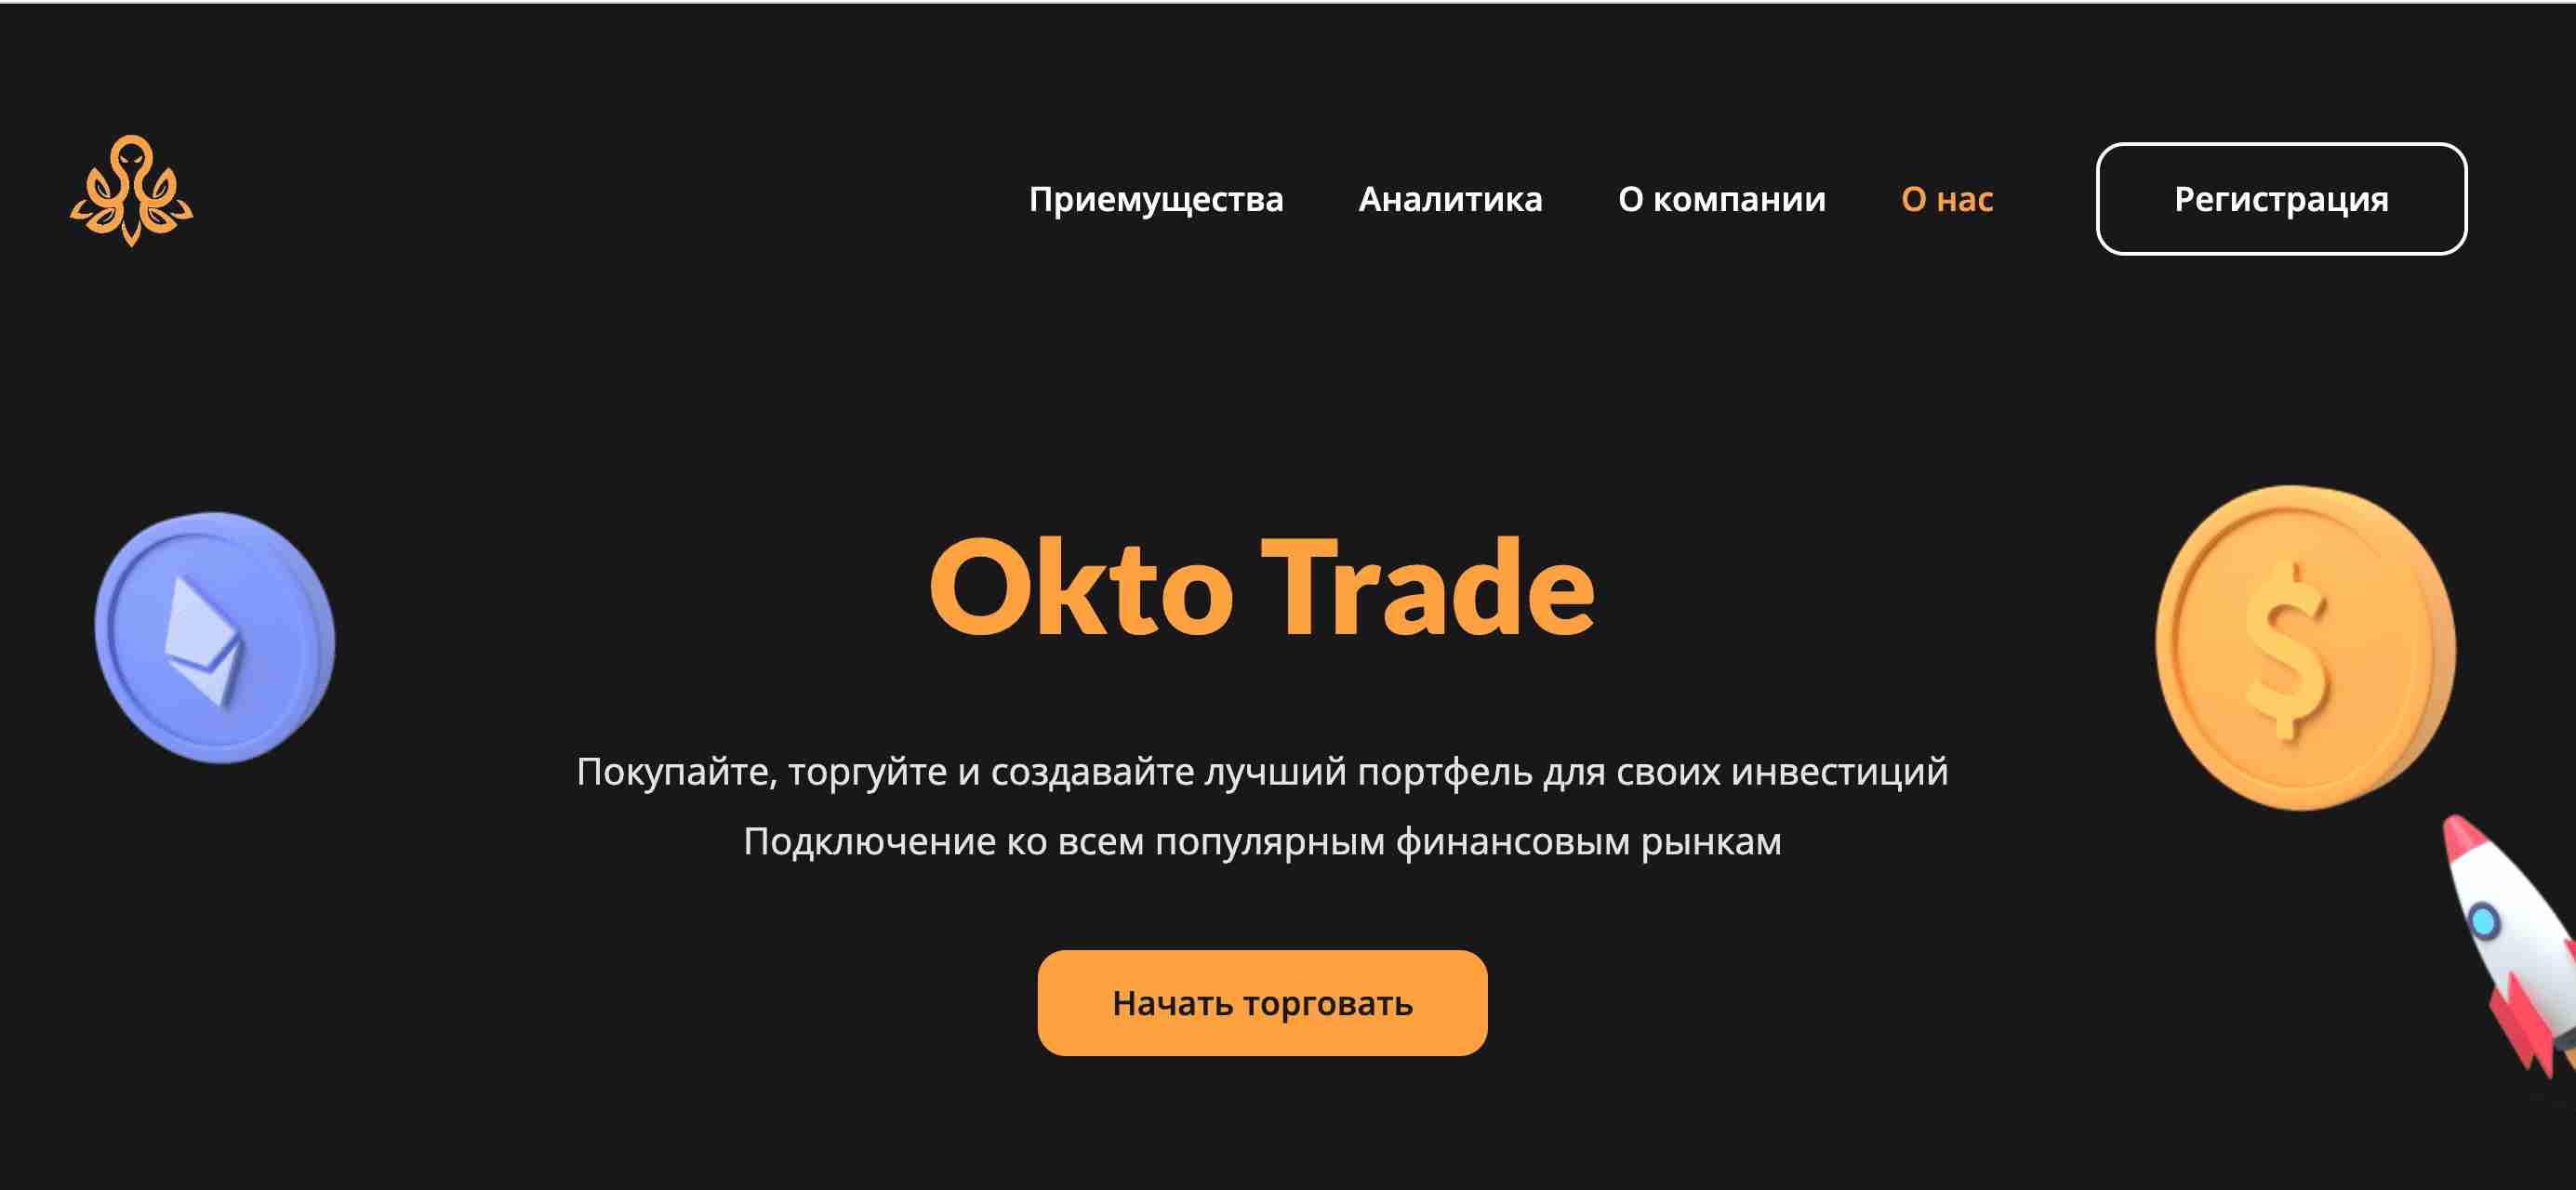 Octo Trade